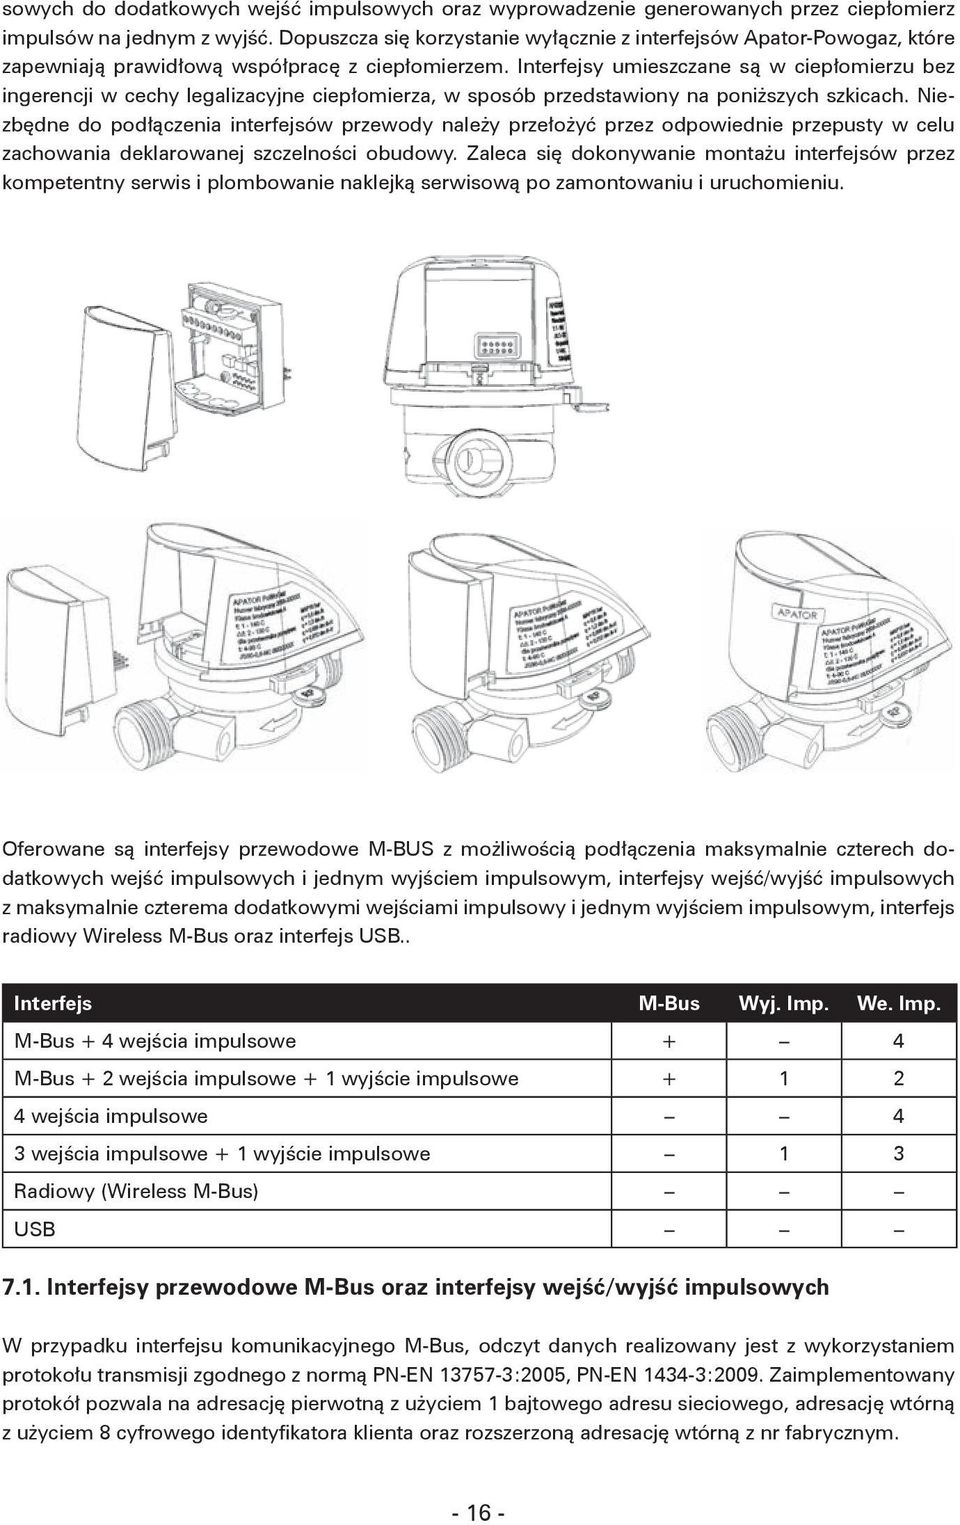 Ciepłomierz kompaktowy - PDF Darmowe pobieranie